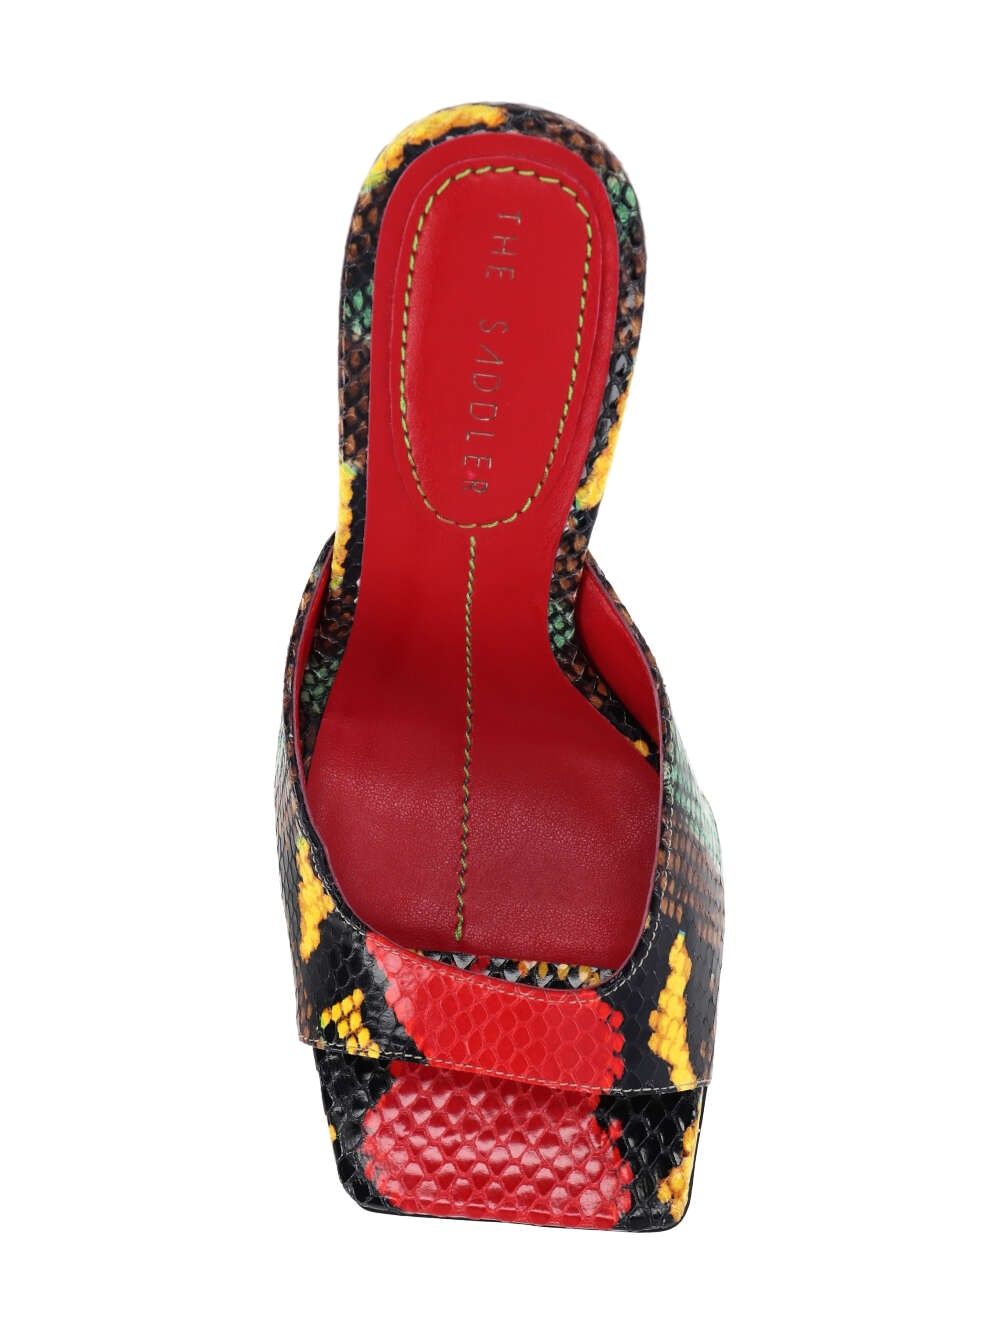 Sandals with 9.5cm high heel